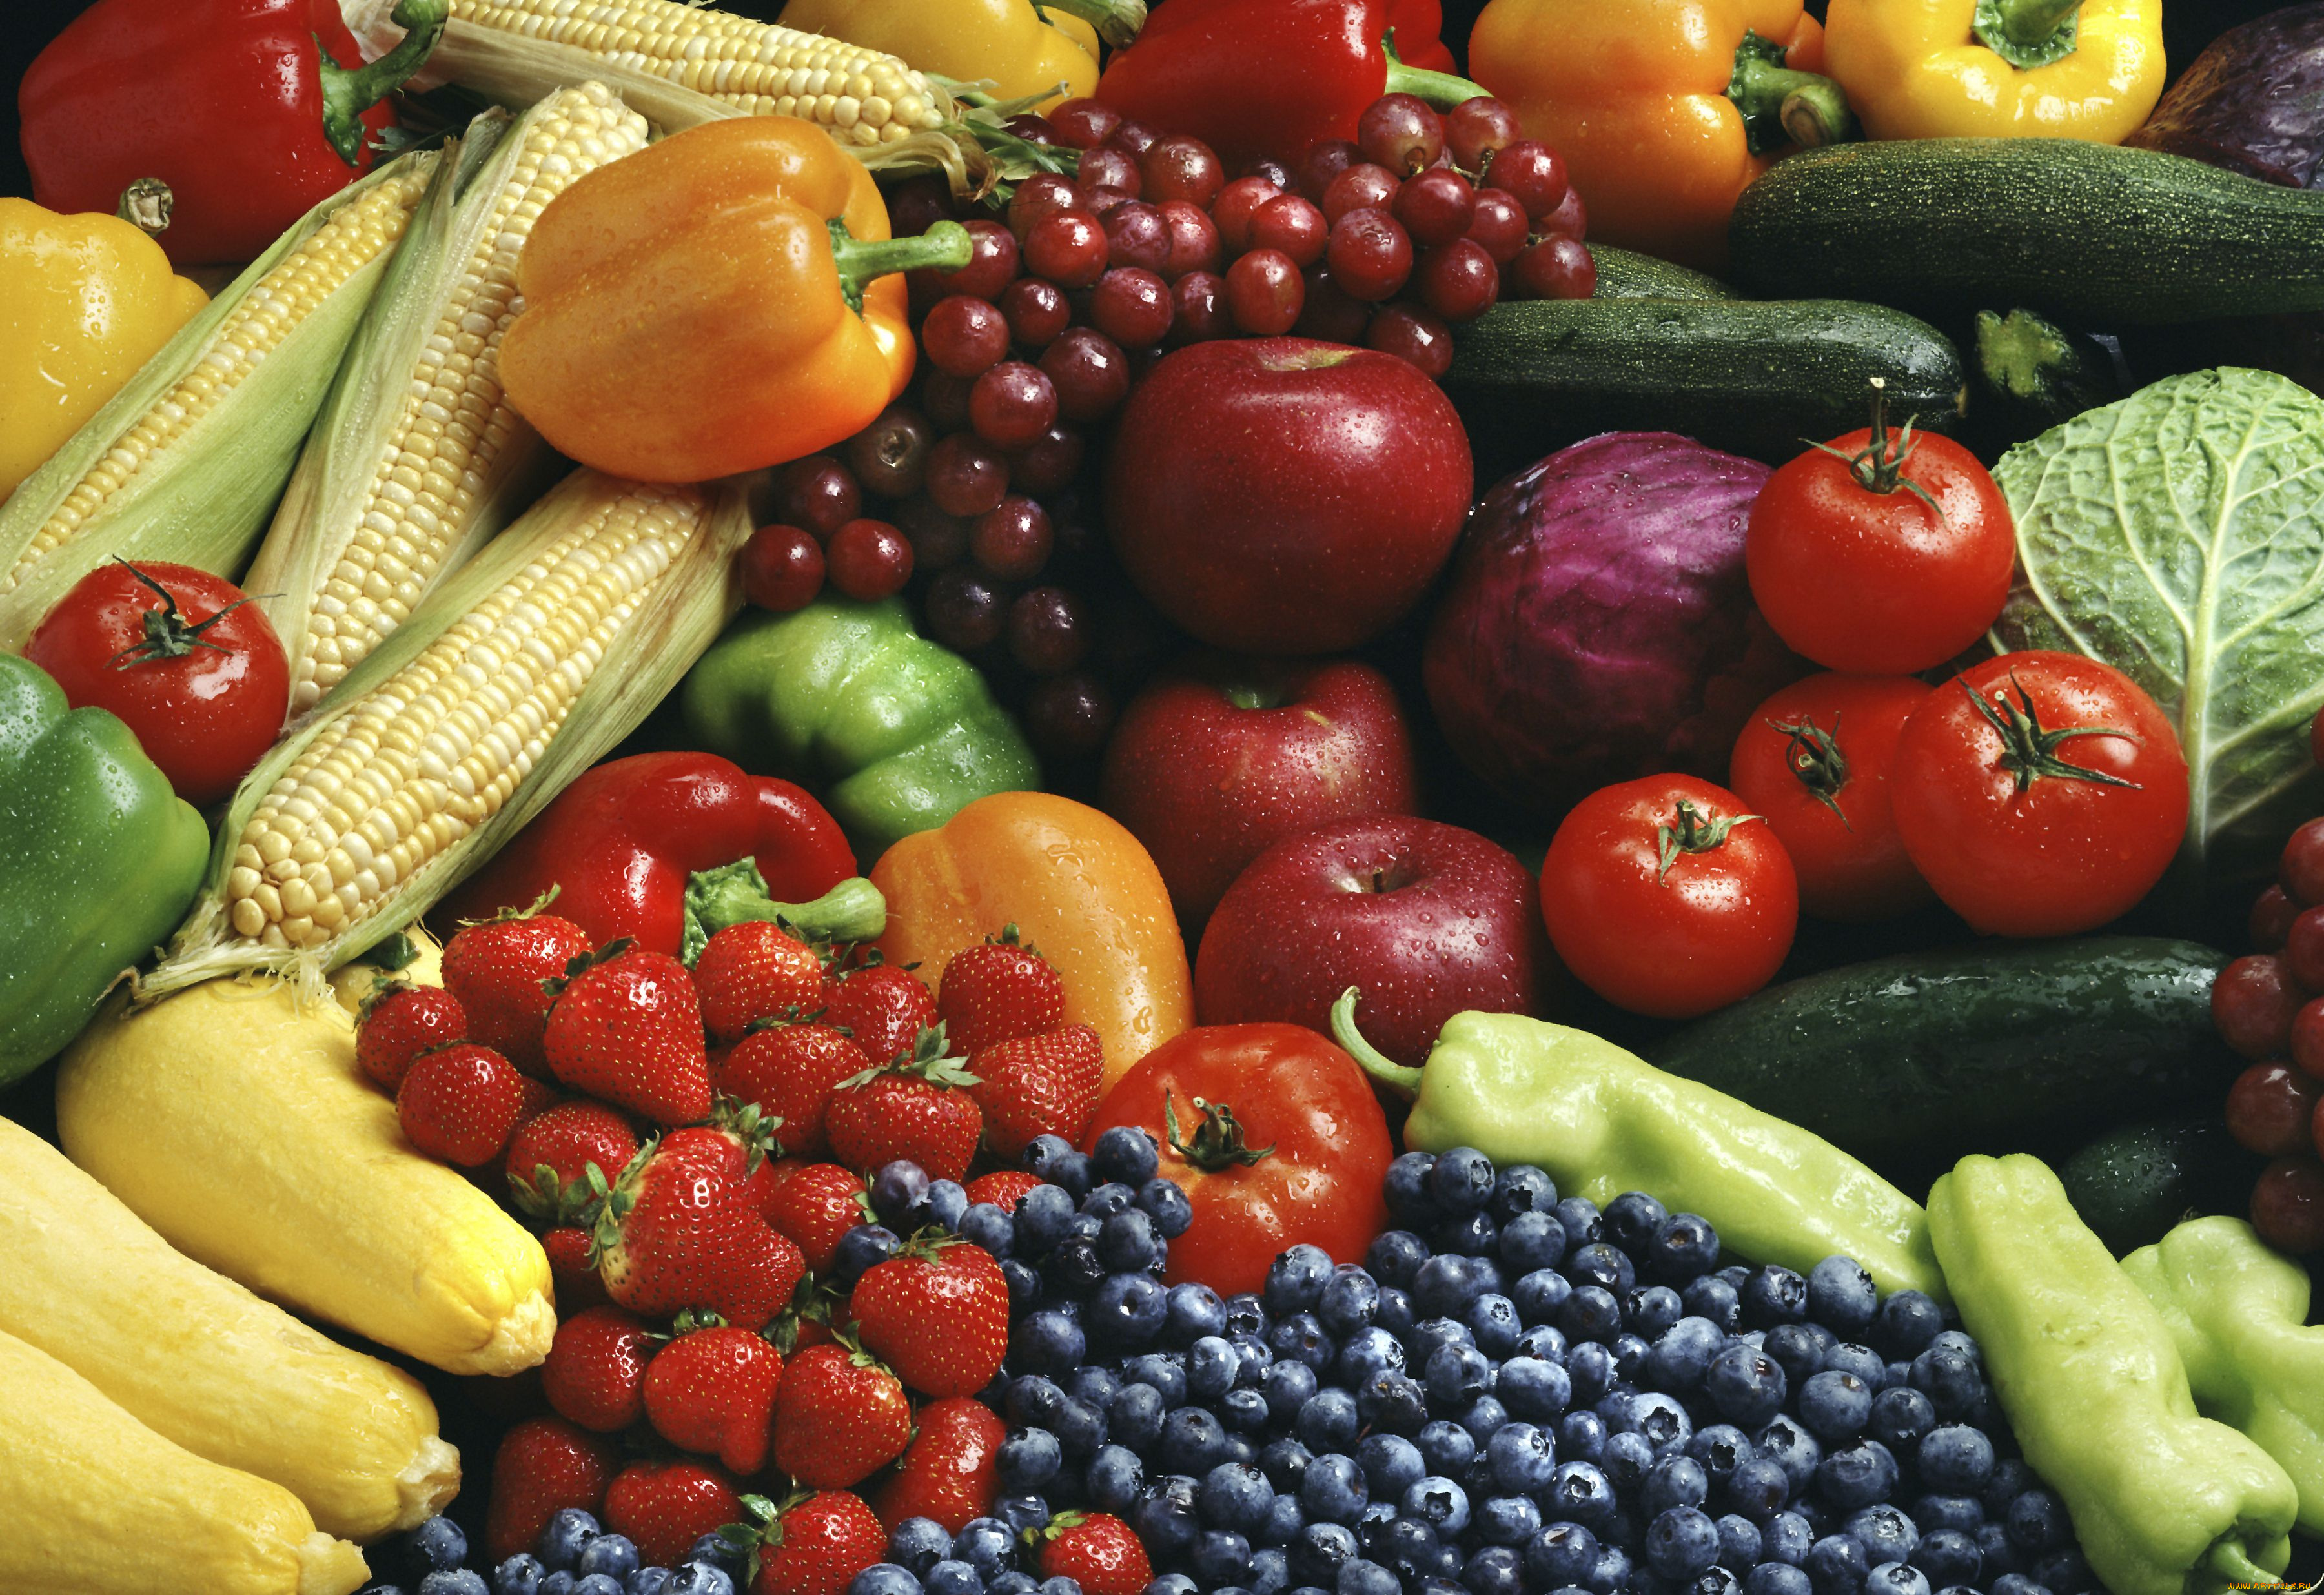 еда, фрукты, овощи, вместе, цуккини, помидоры, виноград, паприка, капуста, ягоды, черника, кукуруза, клубника, яблоки, томаты